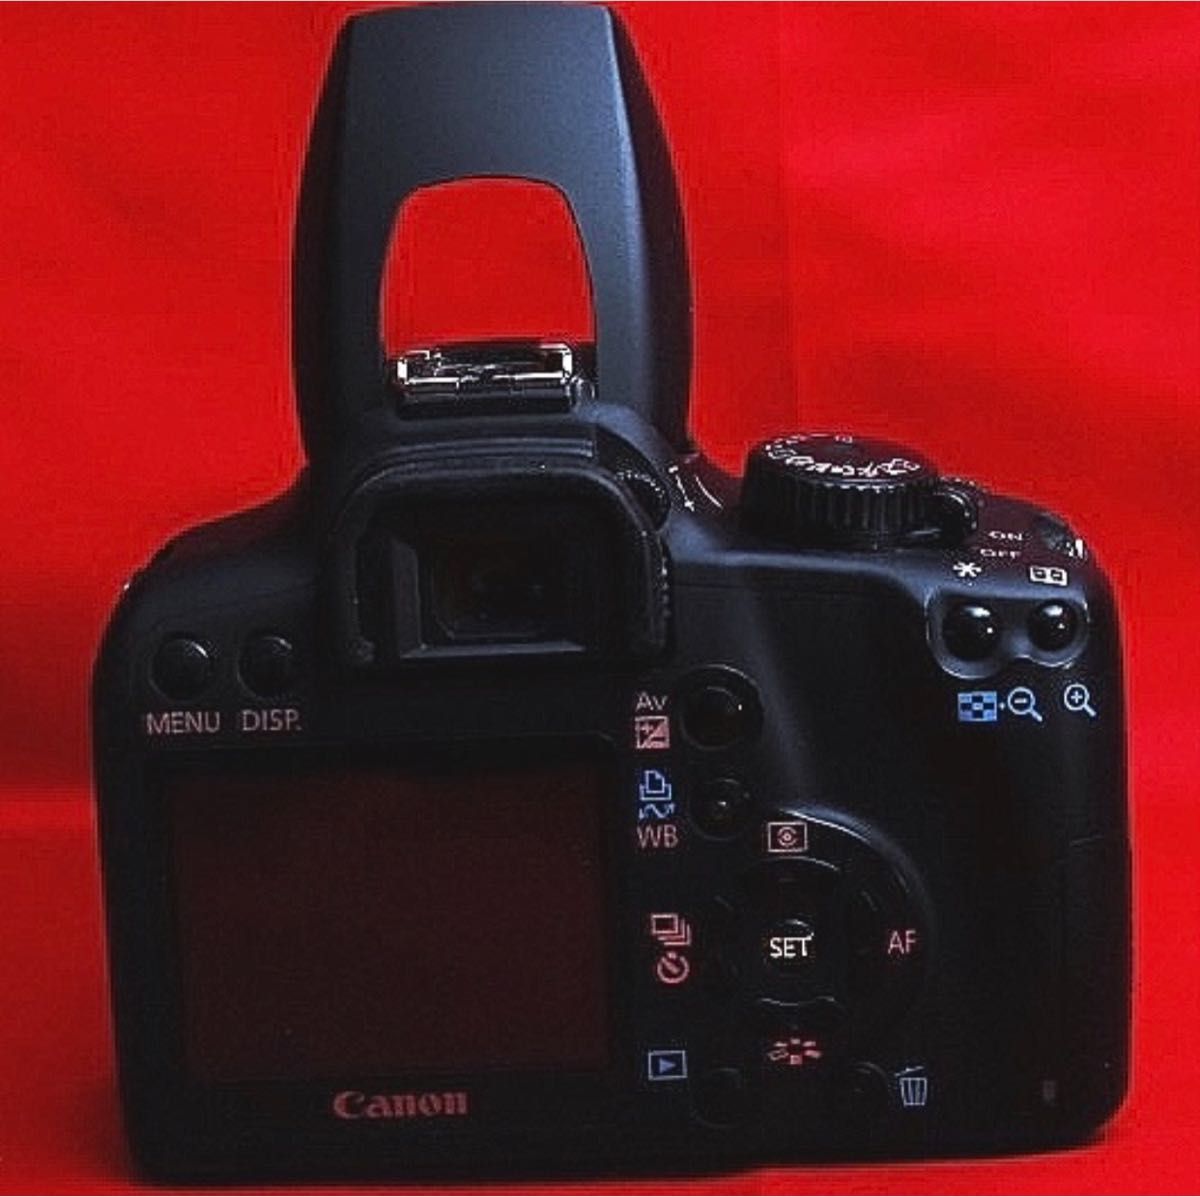 【スマホ転送可能】Canon EOS Kiss F ダブルズームキット　まとめセット　デジタル一眼レフ　カメラデビューにオススメ